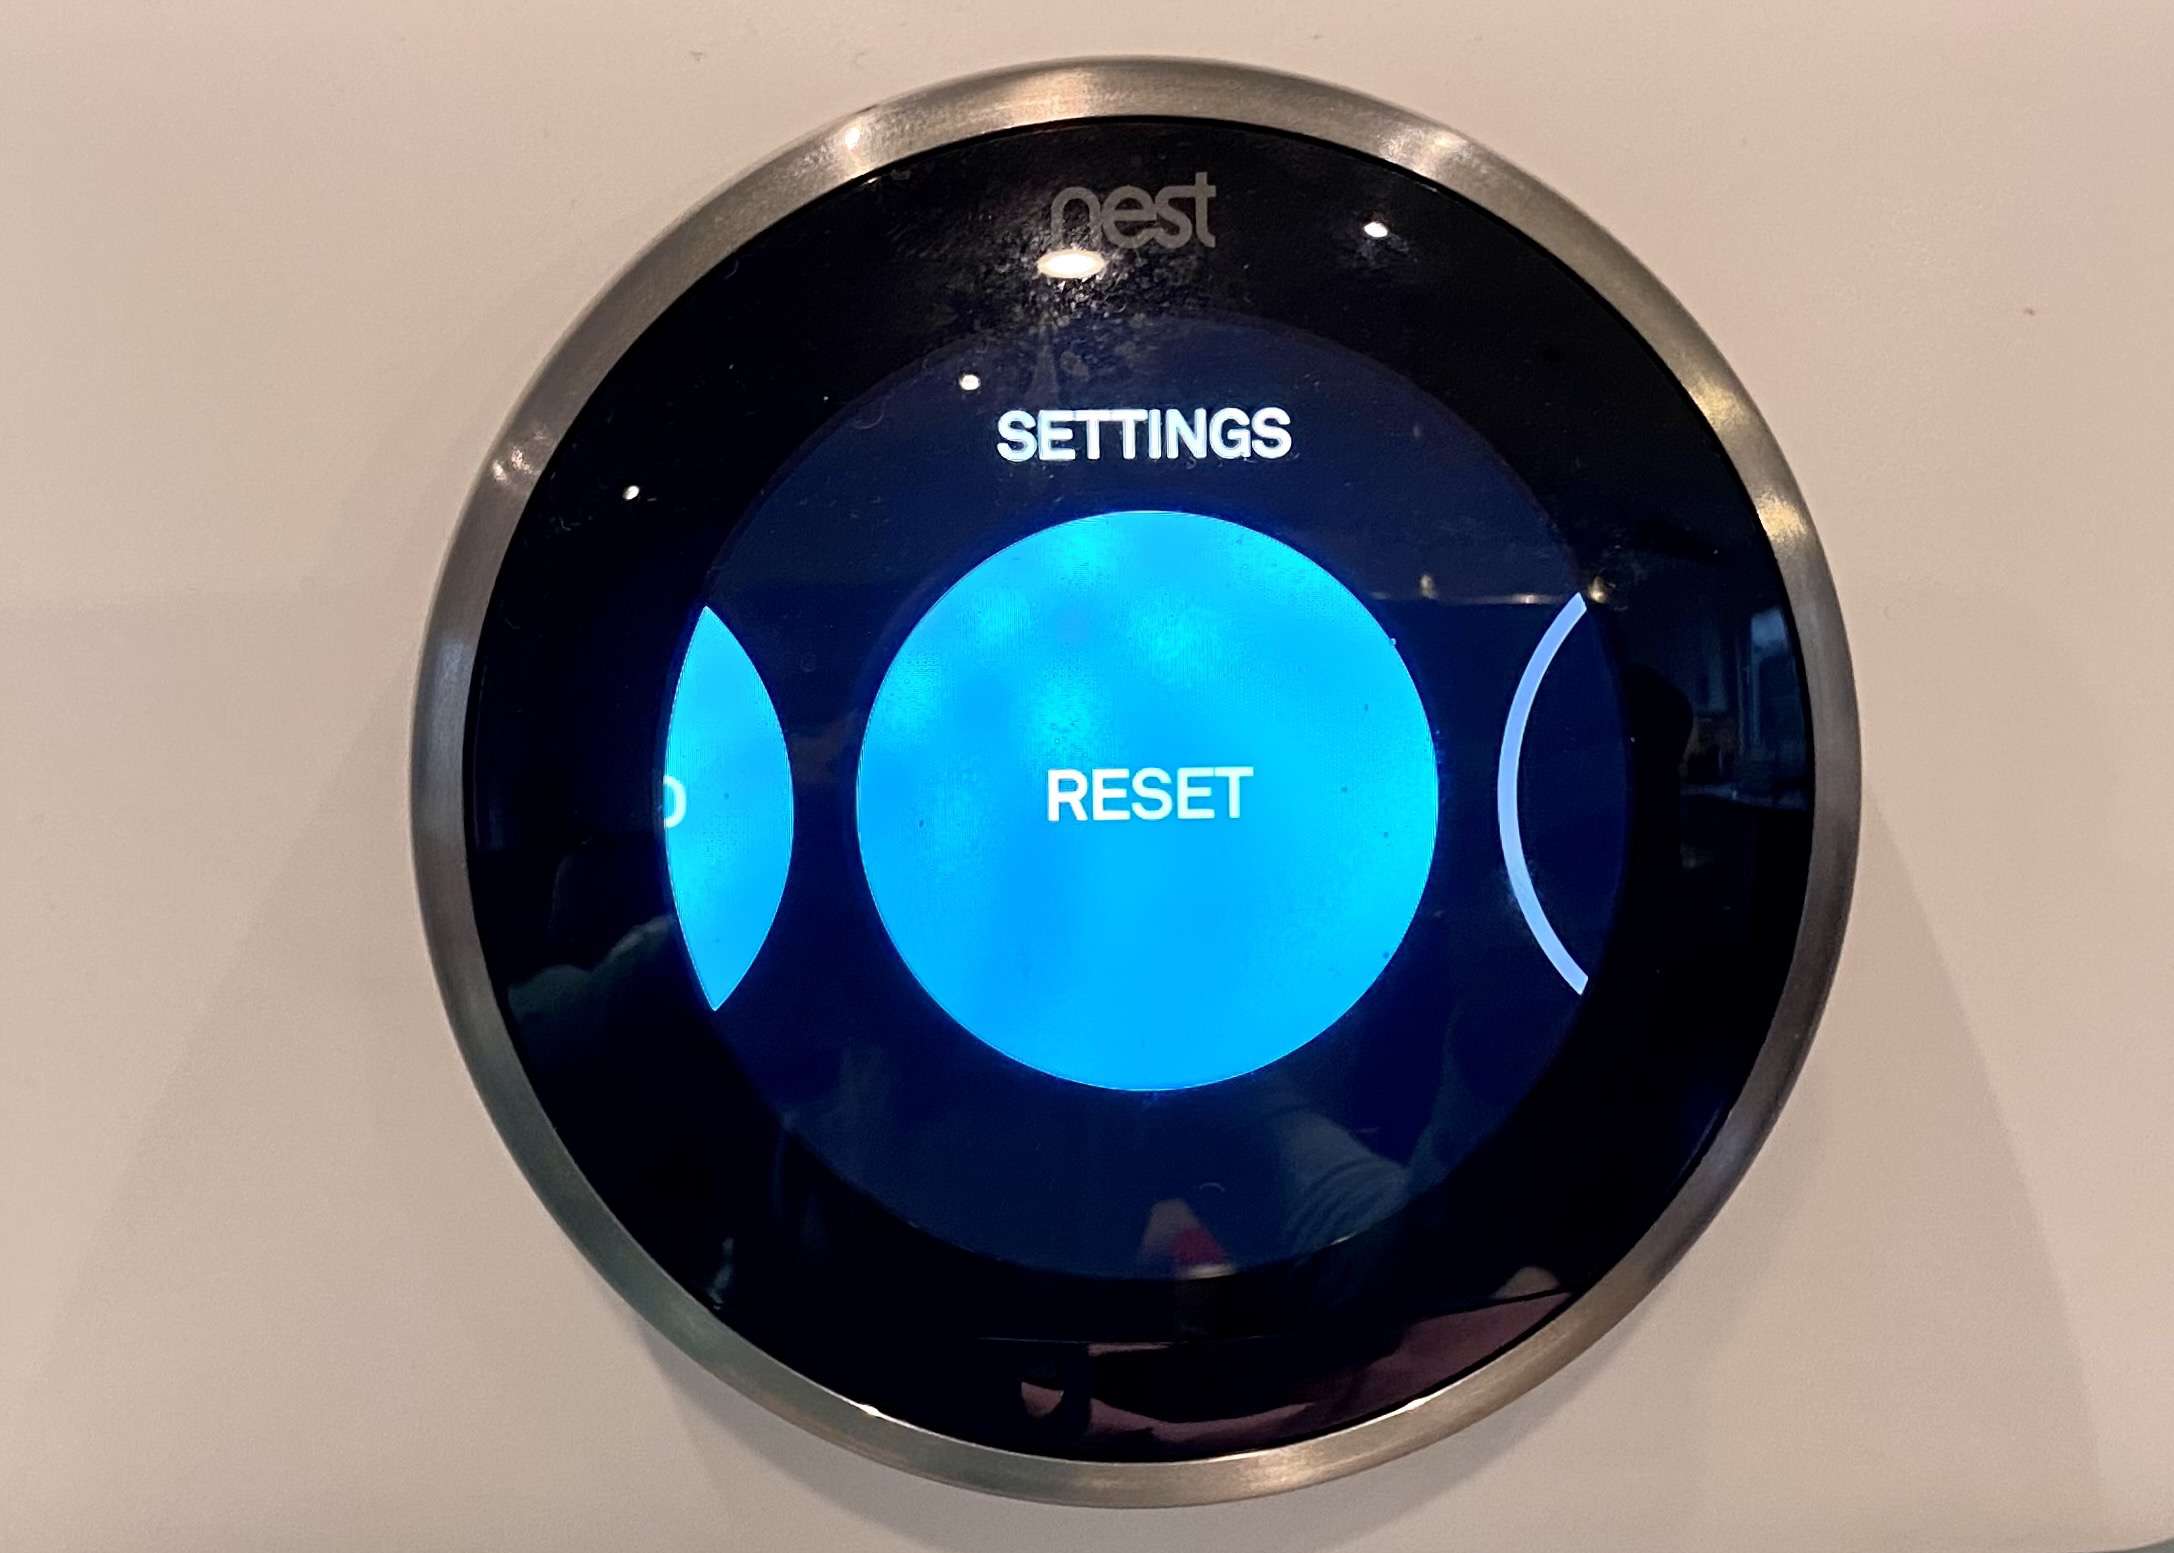 Nabídka termostatu Nest zobrazující Reset.